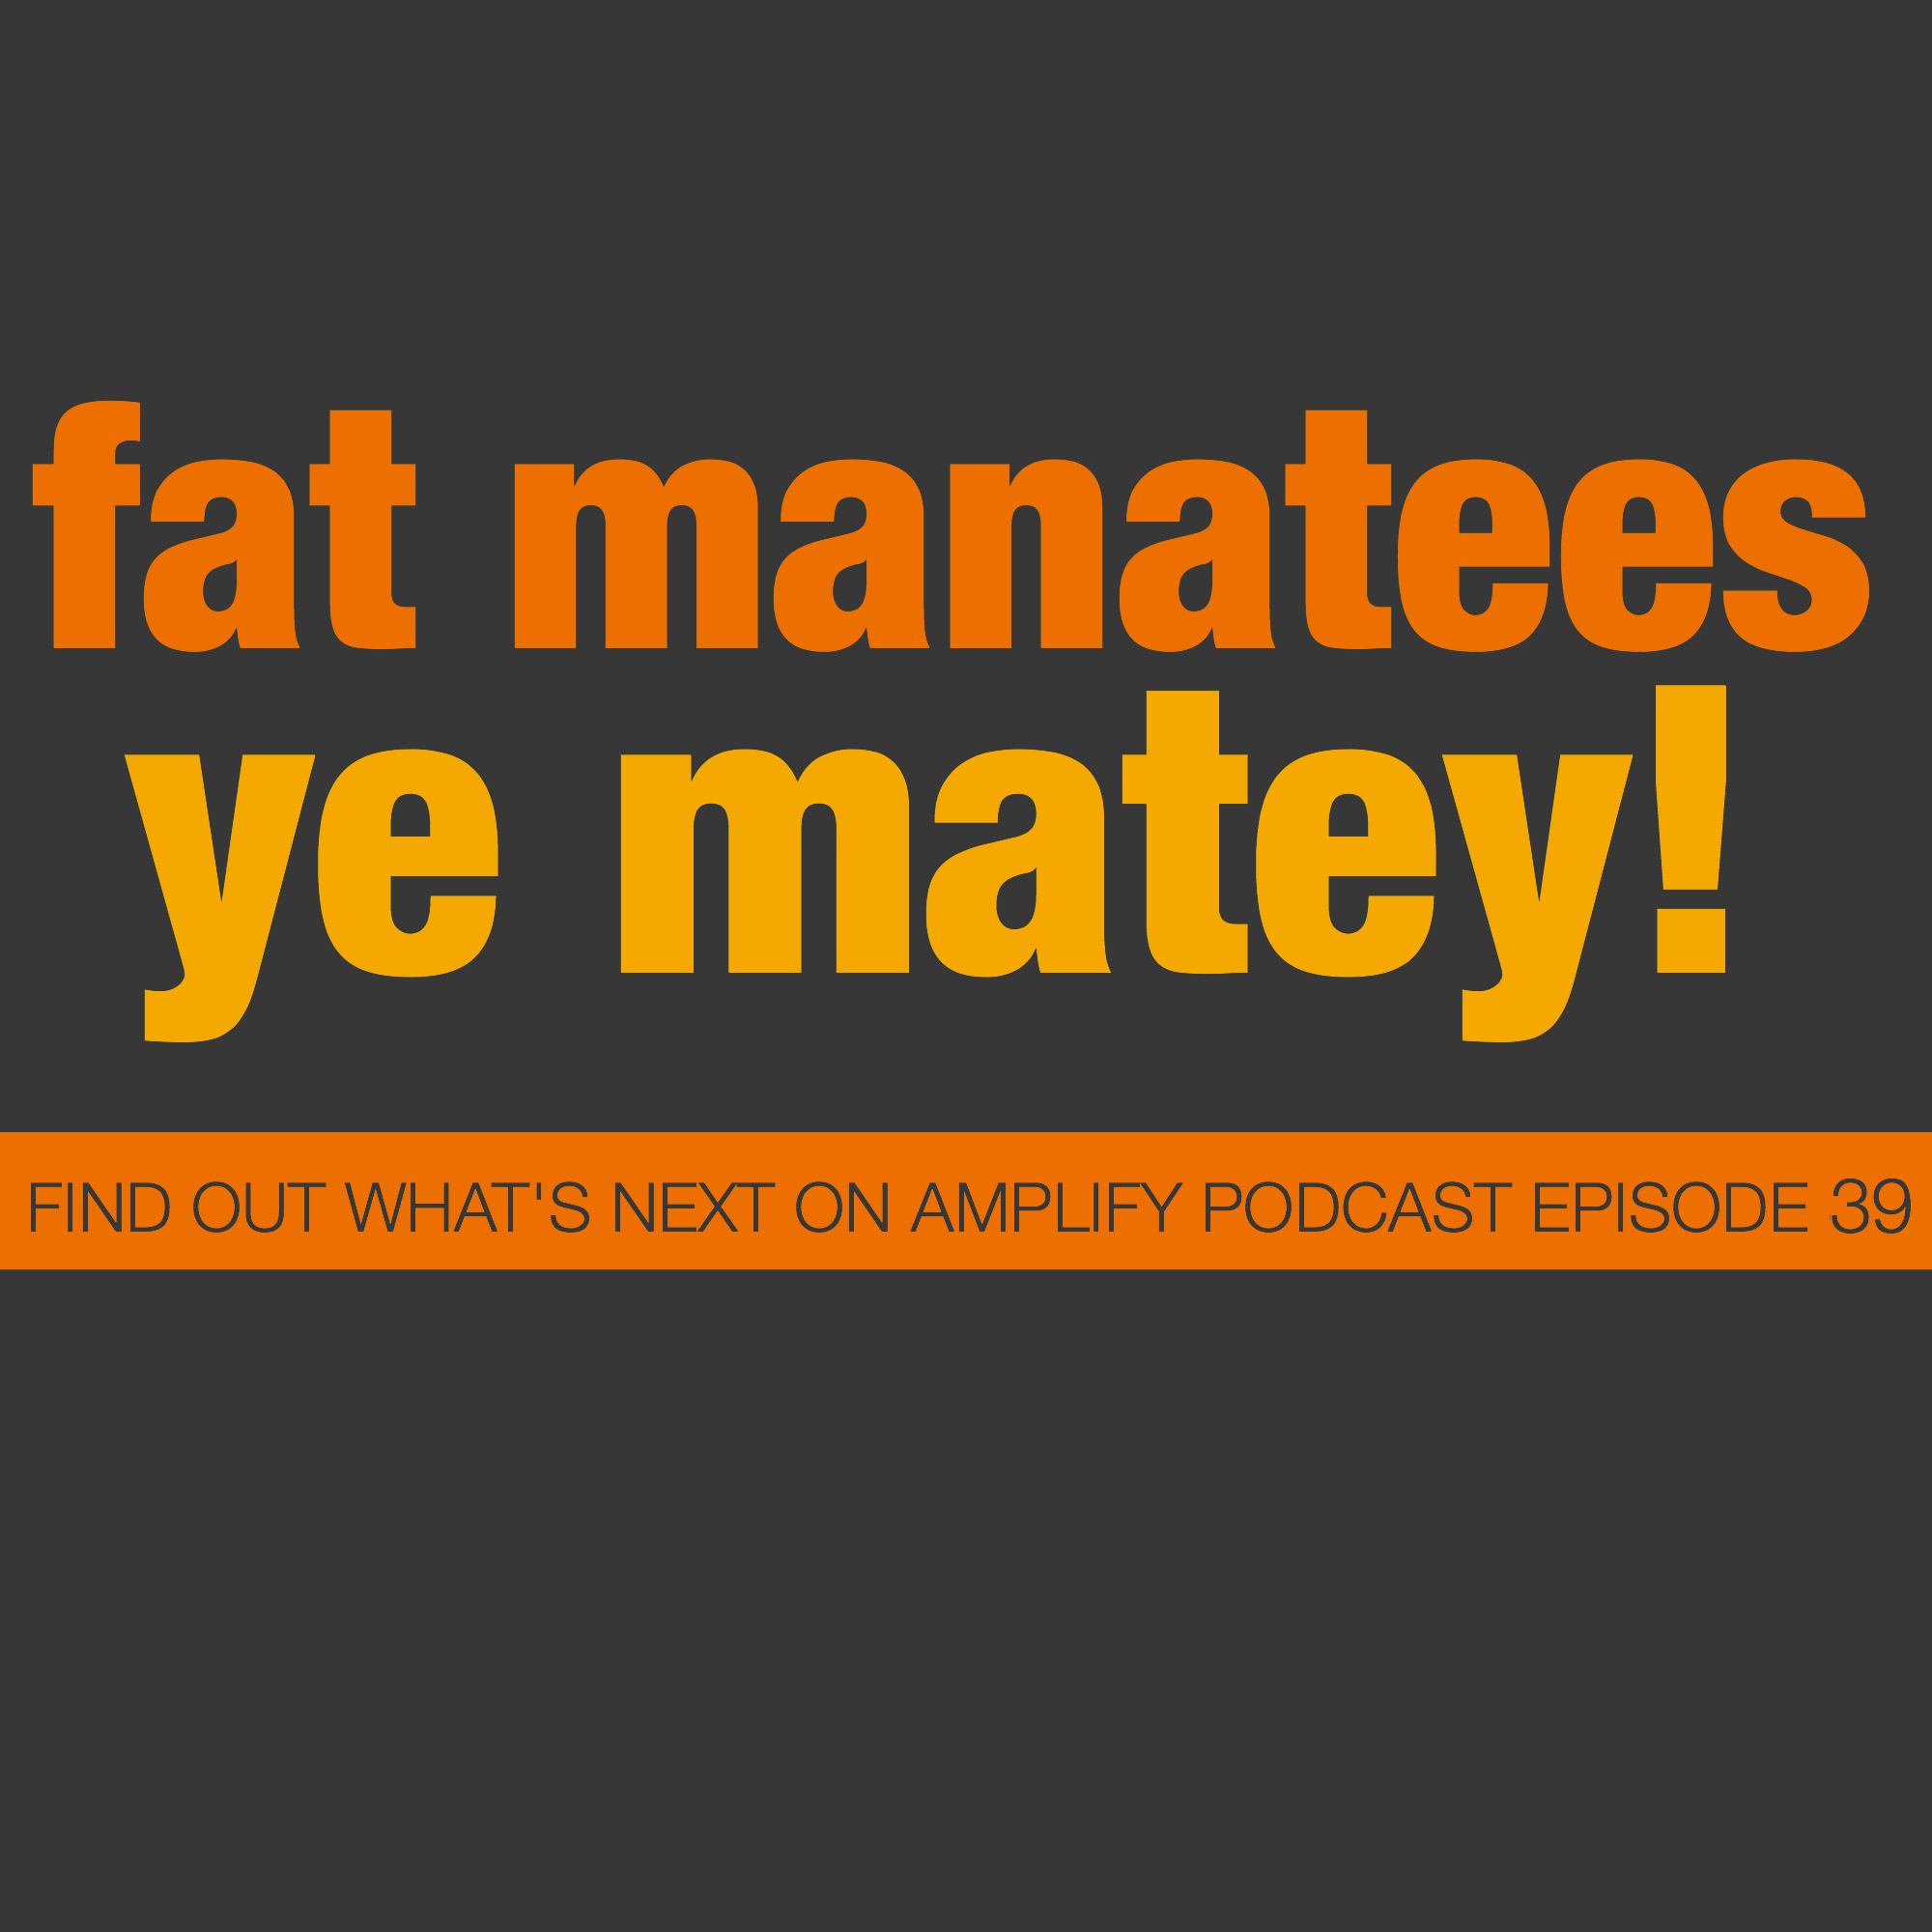 Fat Manatees, Ye Matey!